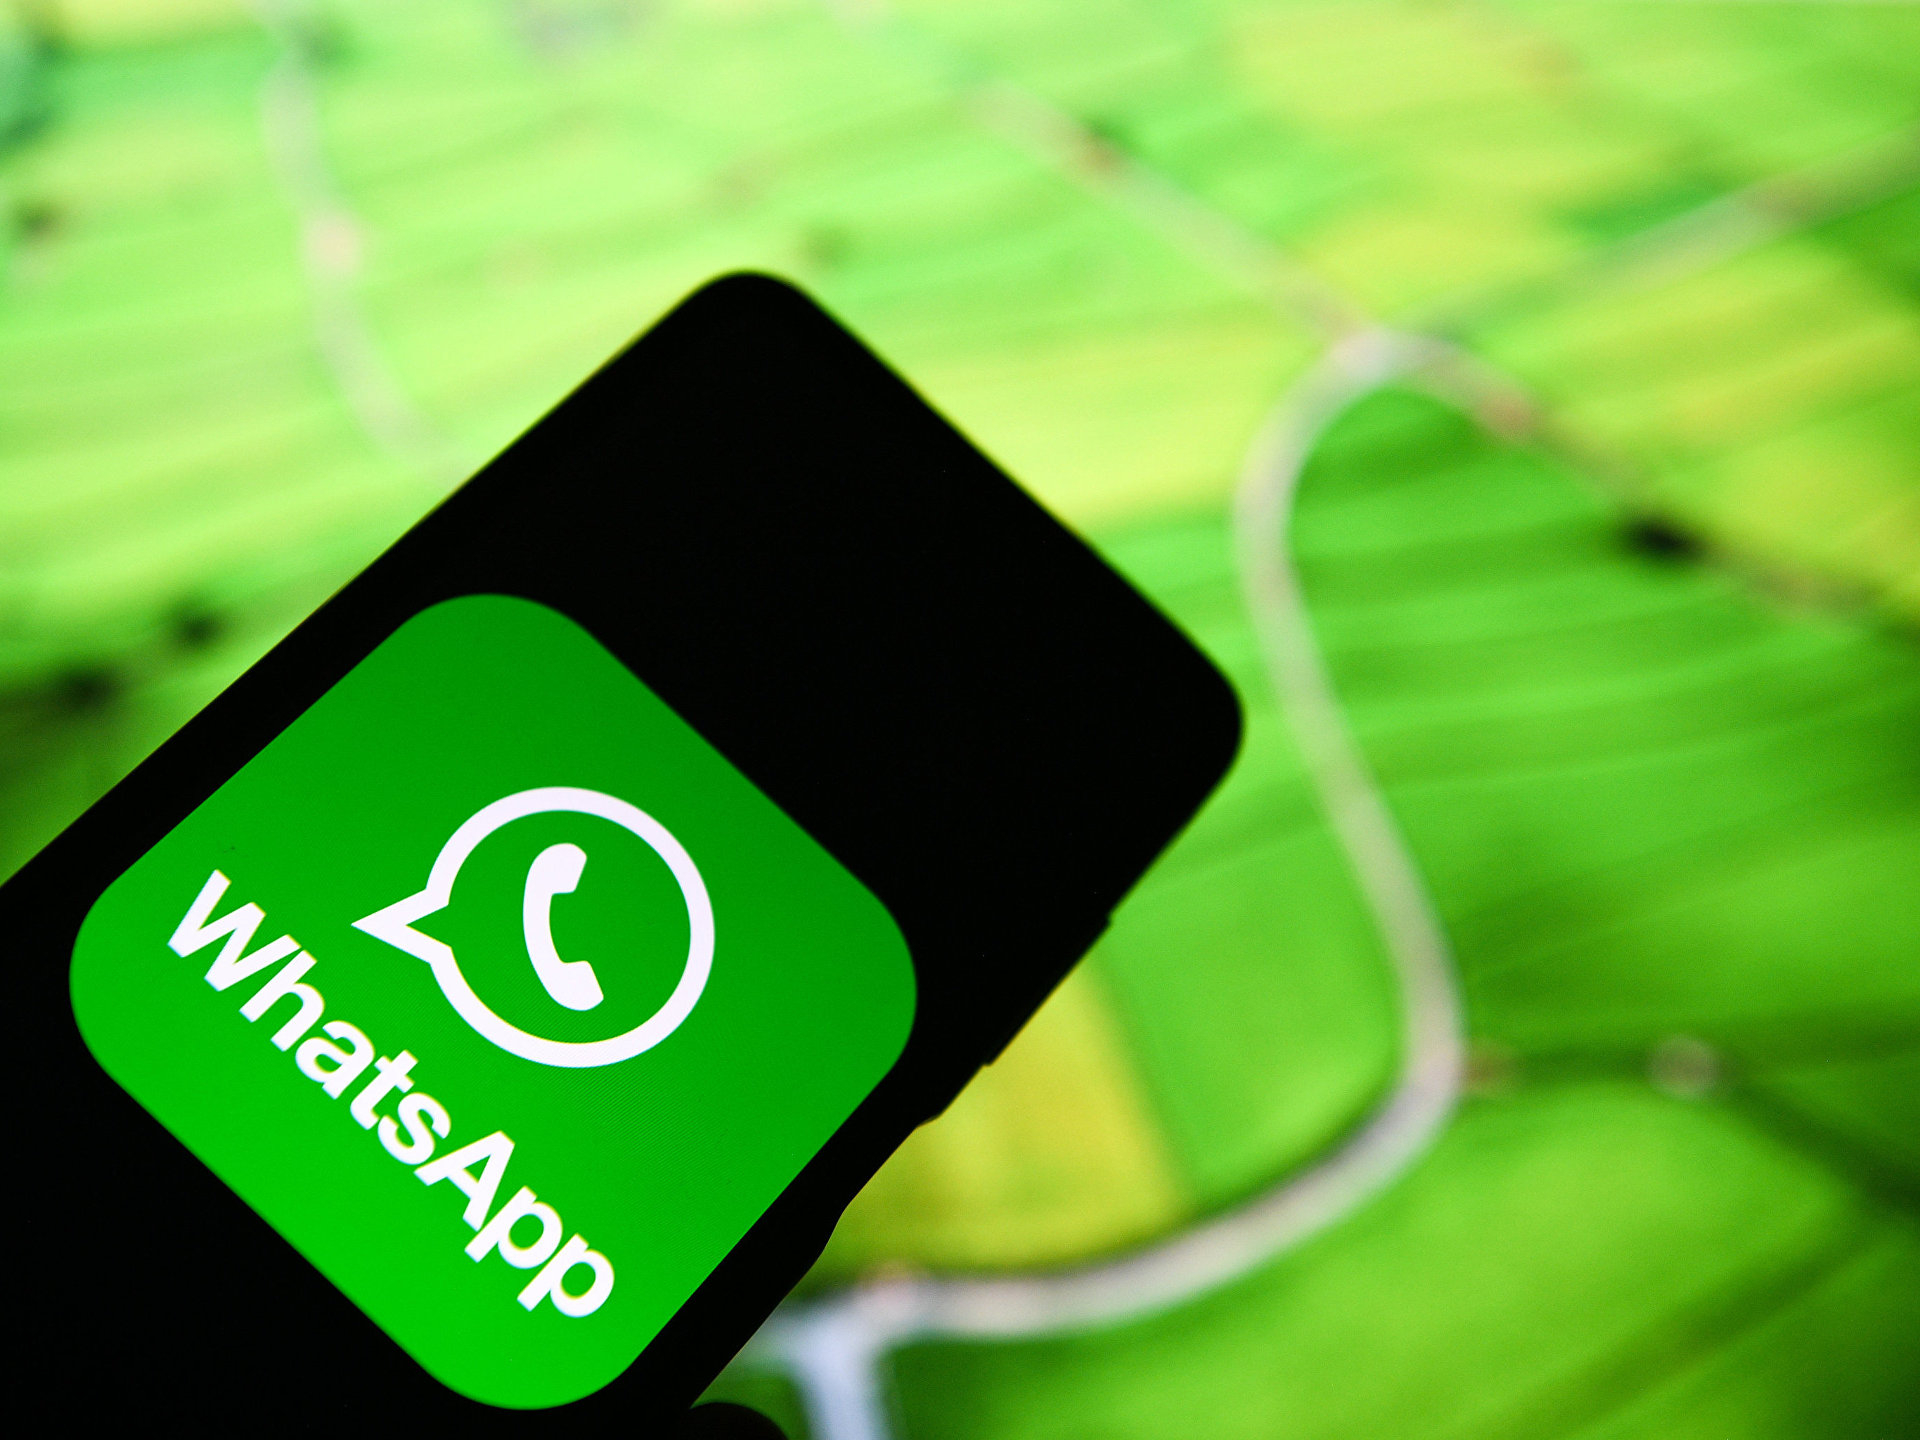 В WhatsApp для Android появится новая функция